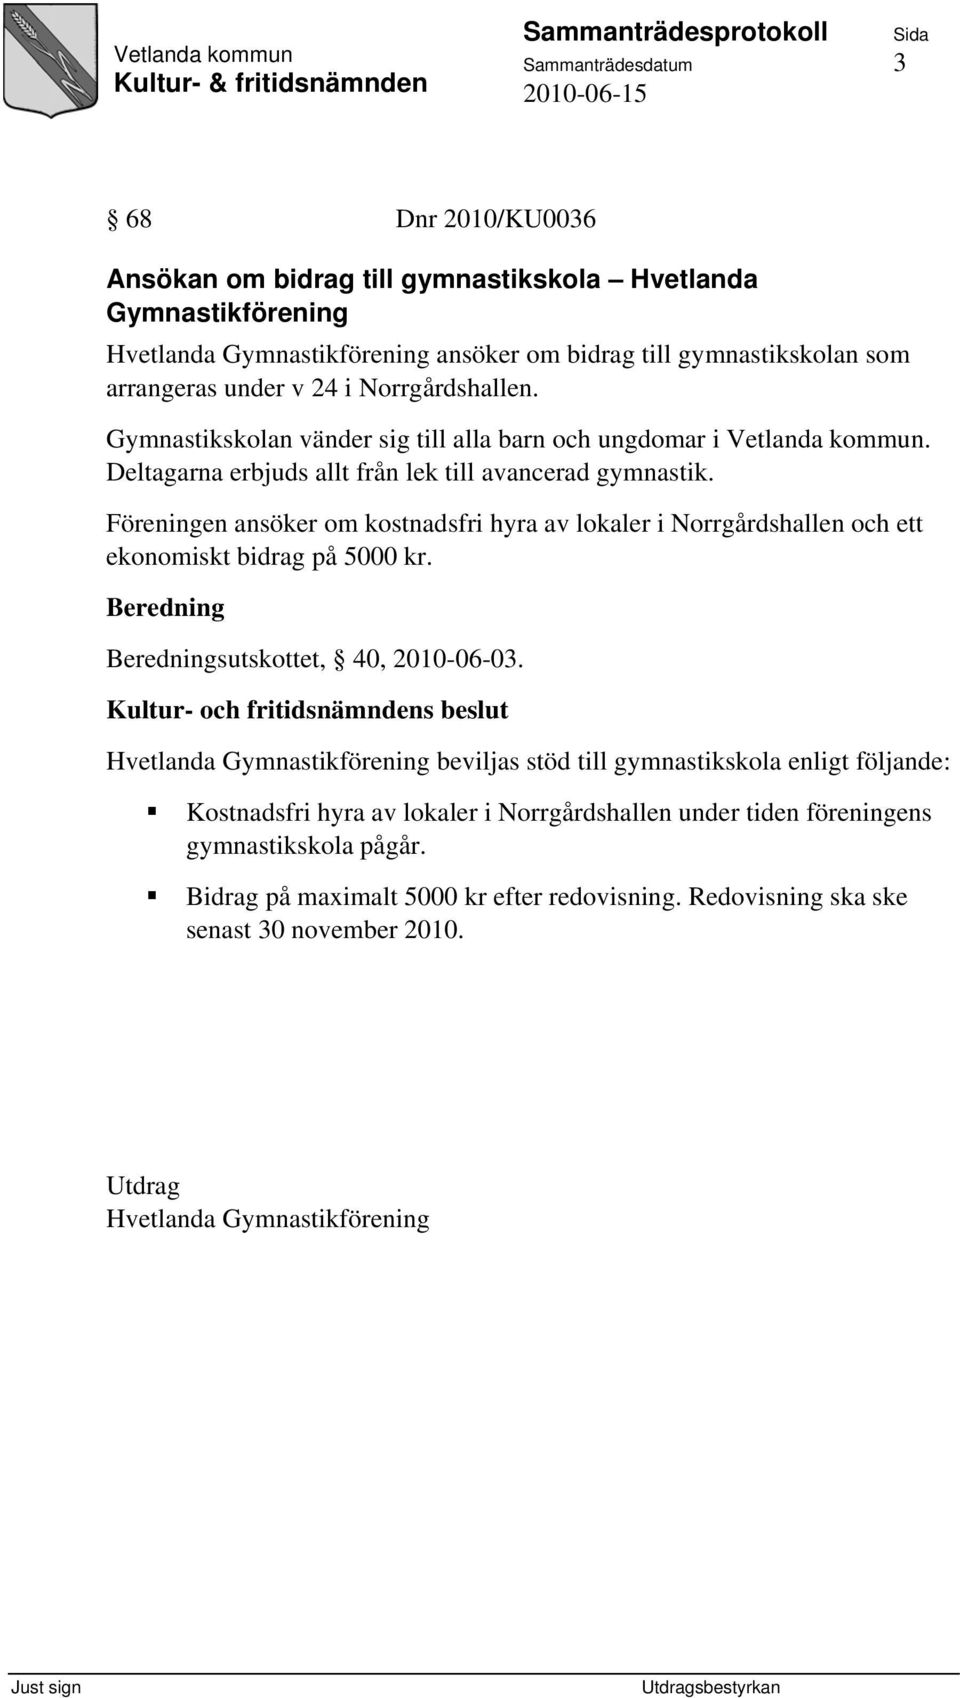 Föreningen ansöker om kostnadsfri hyra av lokaler i Norrgårdshallen och ett ekonomiskt bidrag på 5000 kr. sutskottet, 40, 2010-06-03.